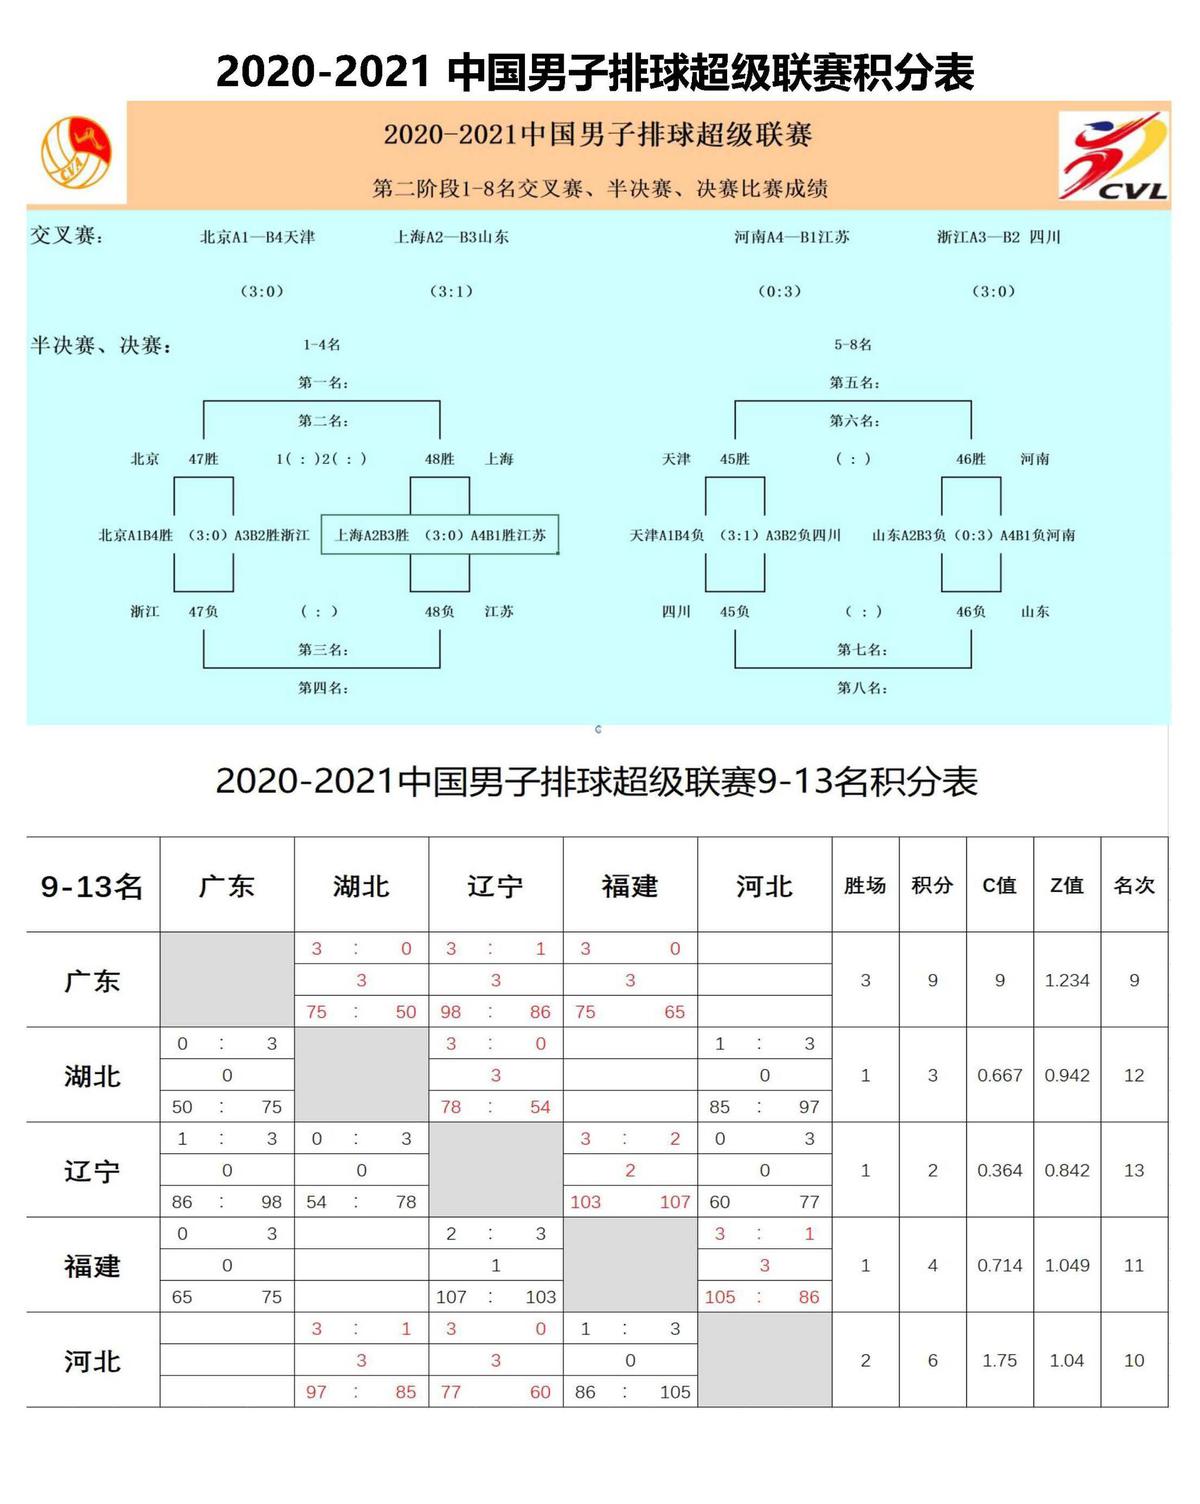 2021年世界排球联赛_中国排协官网